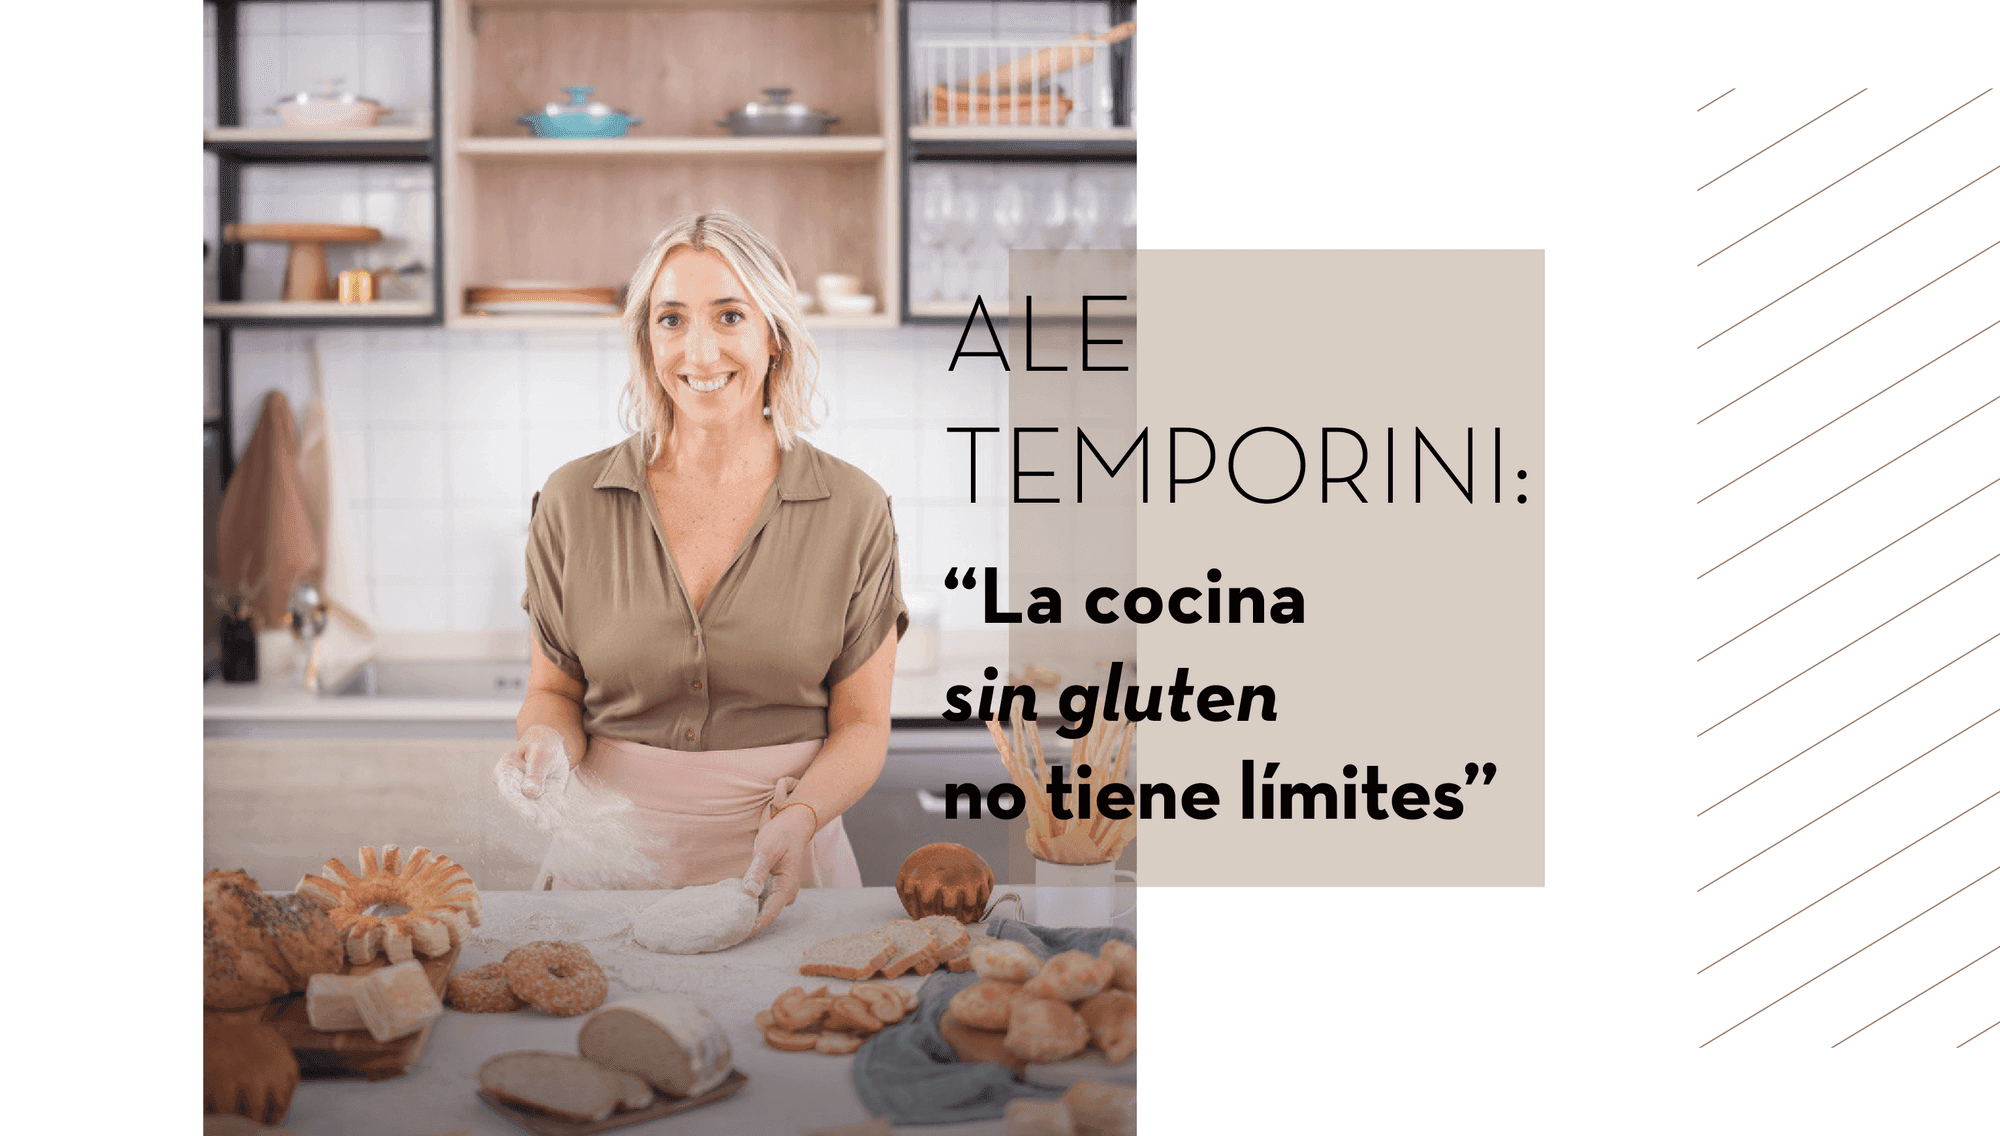 Ale Temporini: “La cocina sin gluten no tiene límites”